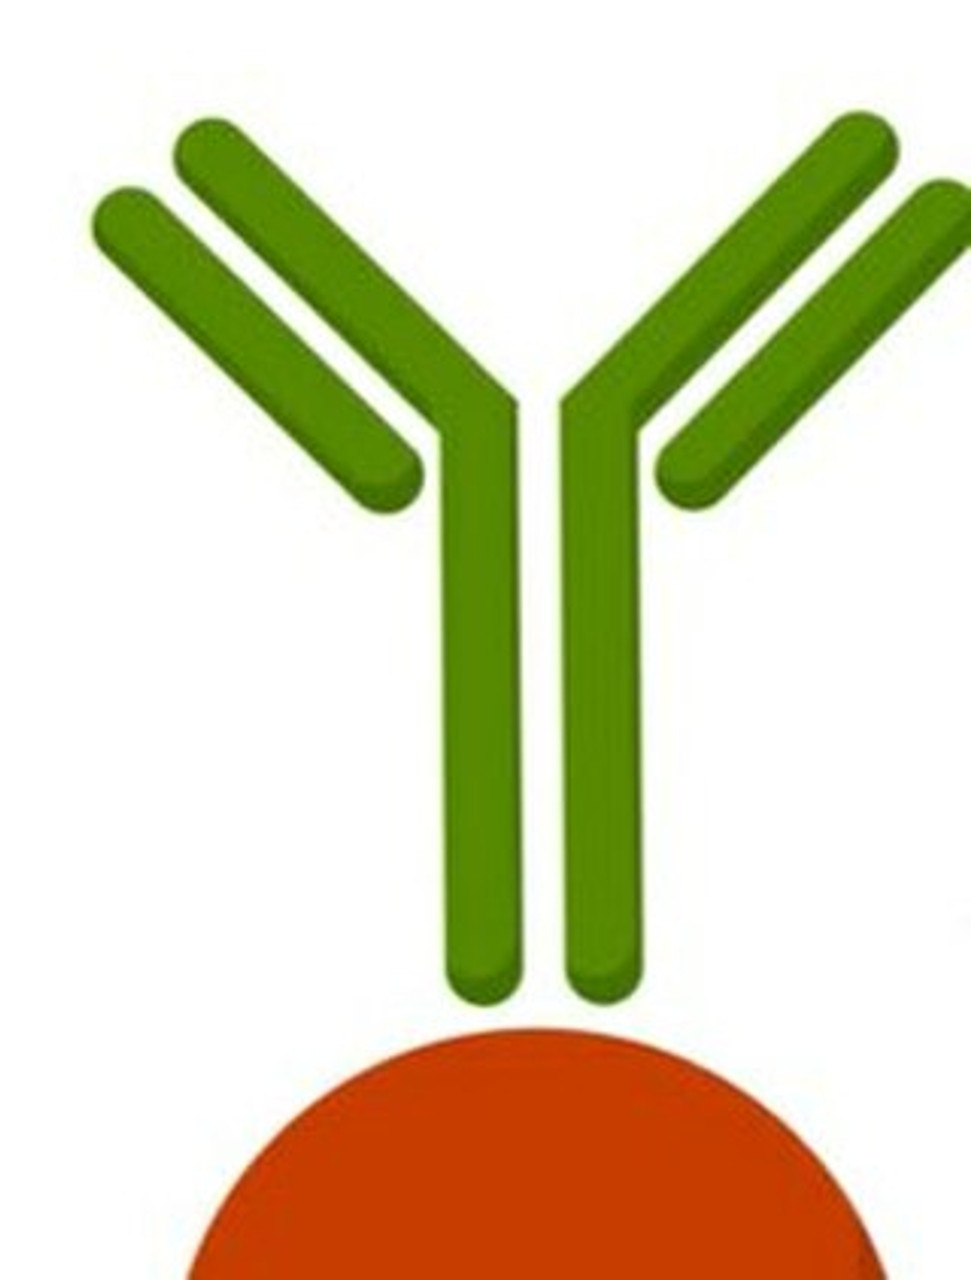 Anti-ALG1 antibody